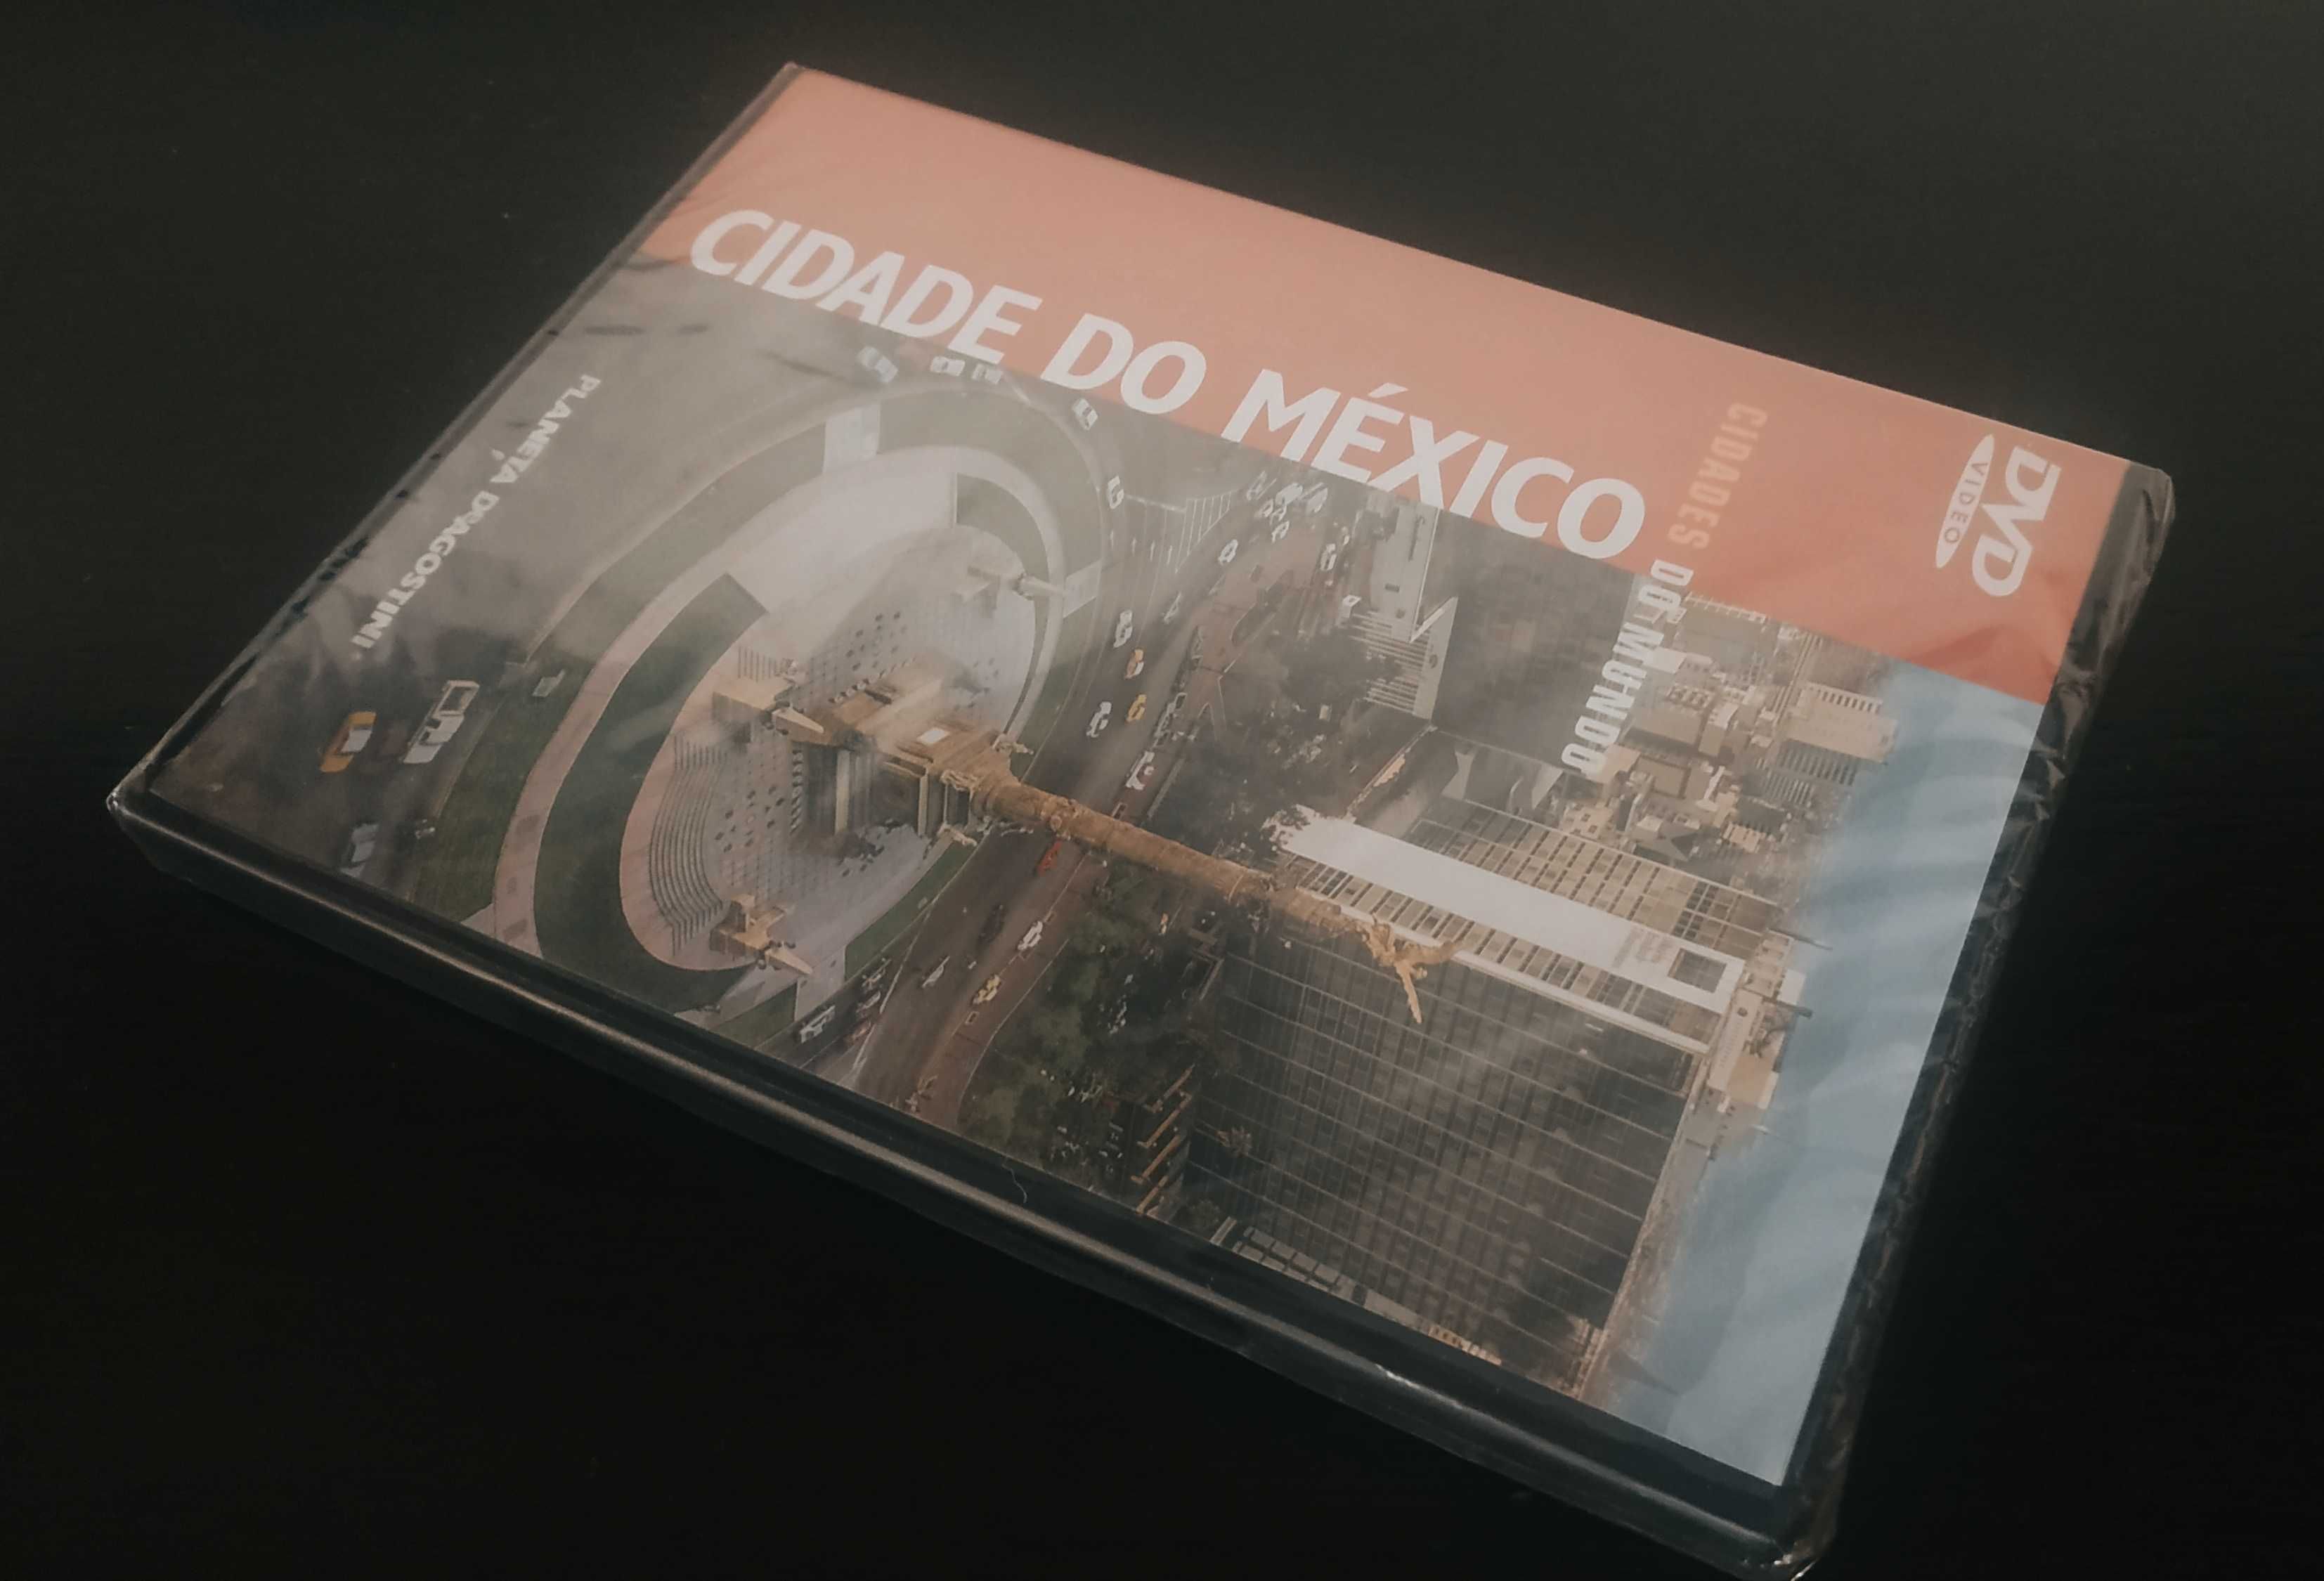 DVD Cidade do Mundo - CIDADE DO MEXICO